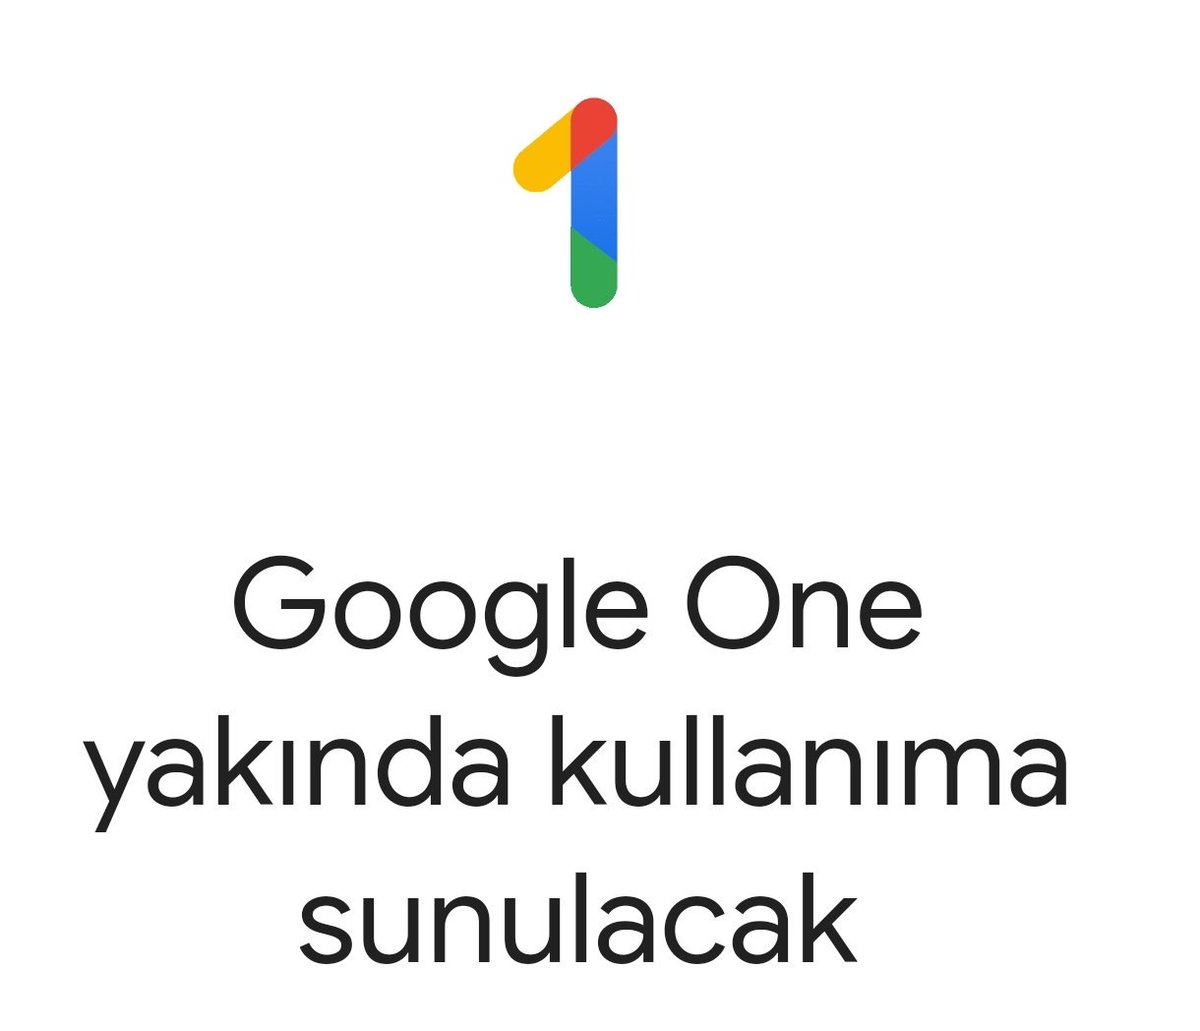 Google Drive hizmeti önümüzdeki haftalarda Google One olarak değişecek.